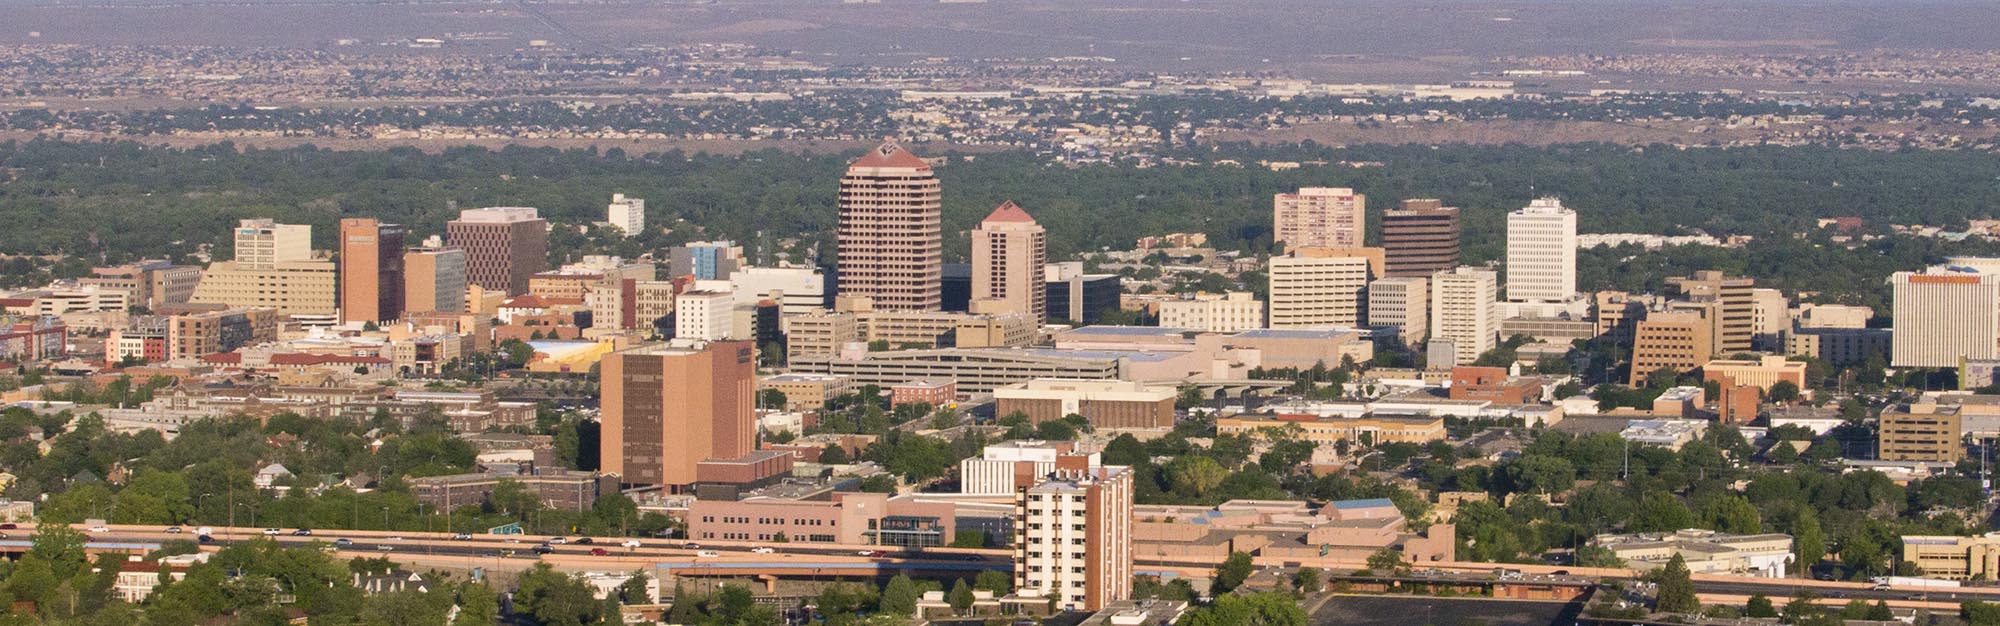 Vista aérea del centro de Albuquerque